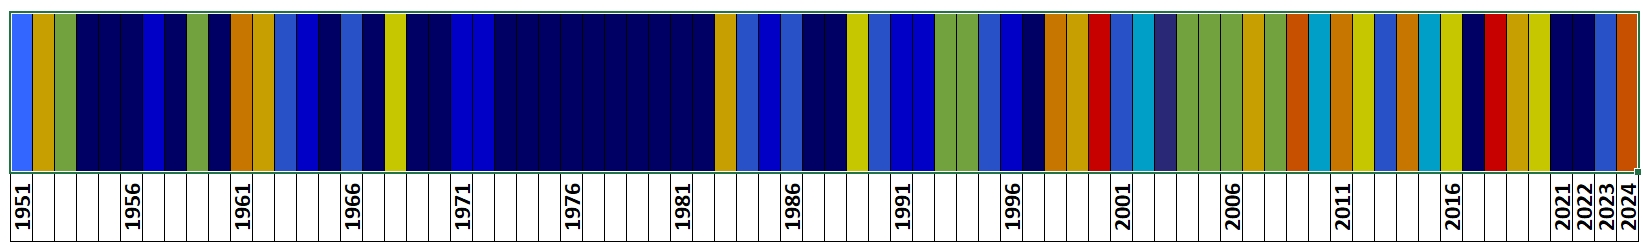 Klasyfikacja warunków termicznych w Polsce w kwietniu, w okresie 1951-2024, na podstawie norm okresu normalnego 1991-2020.